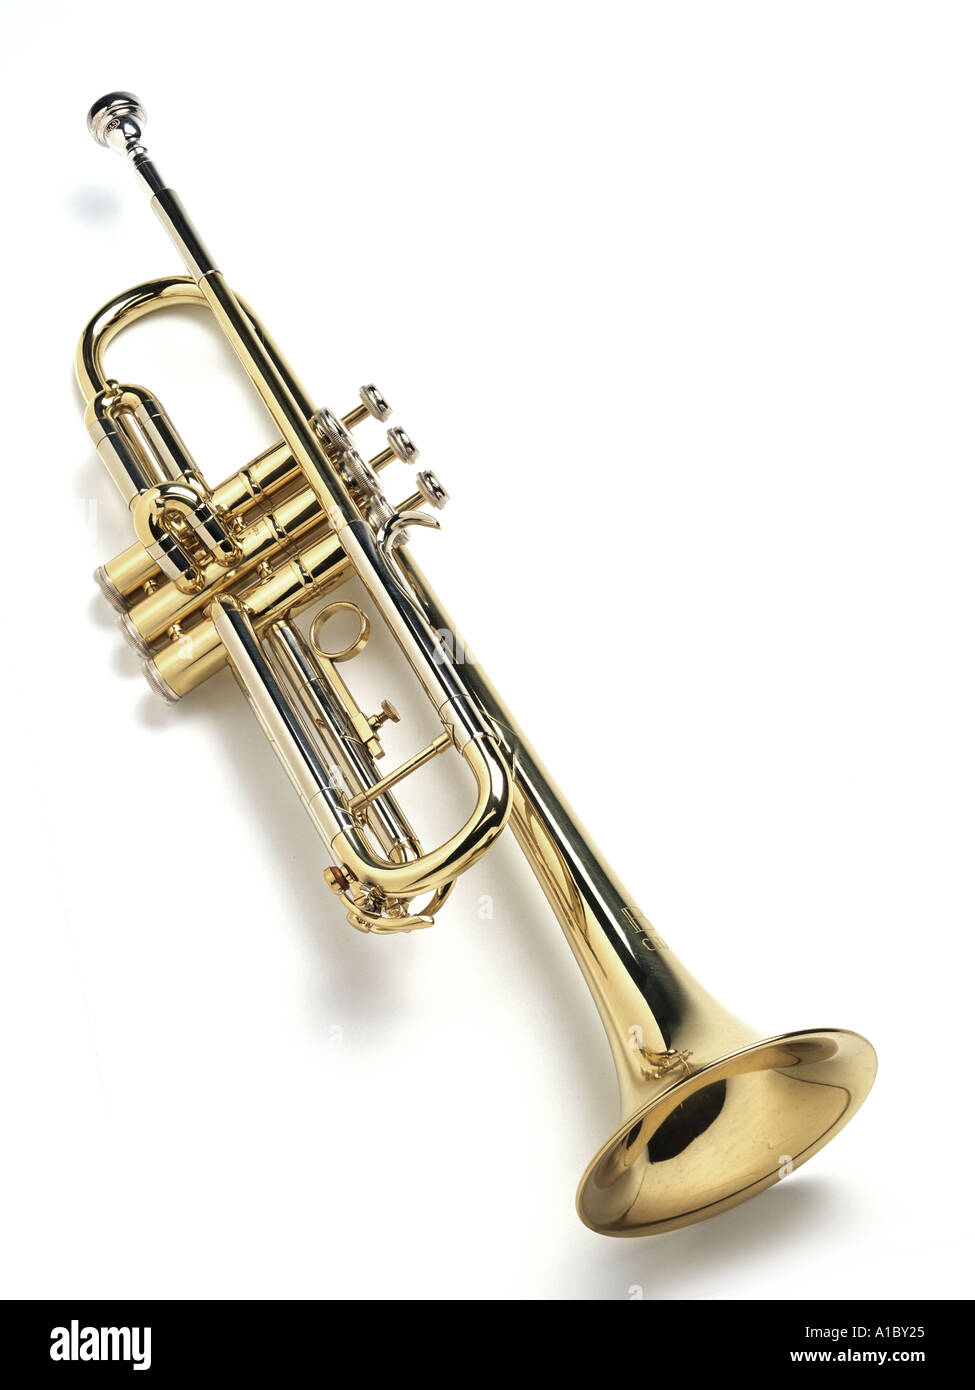 a shiny brass trumpet Stock Photo